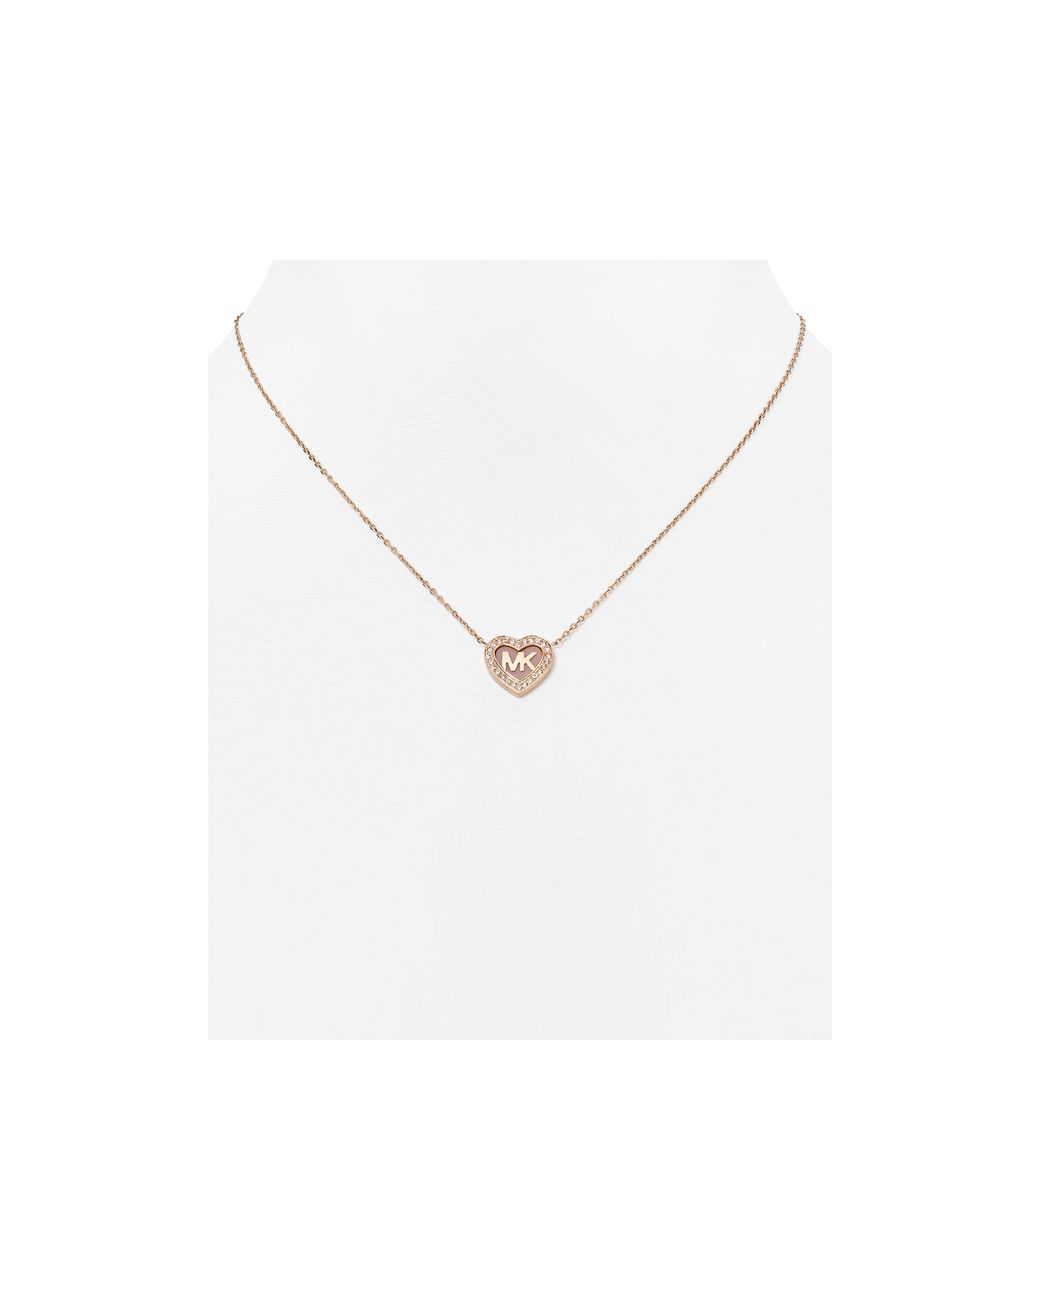 Michael Kors Pave Heart Pendant Necklace, 16